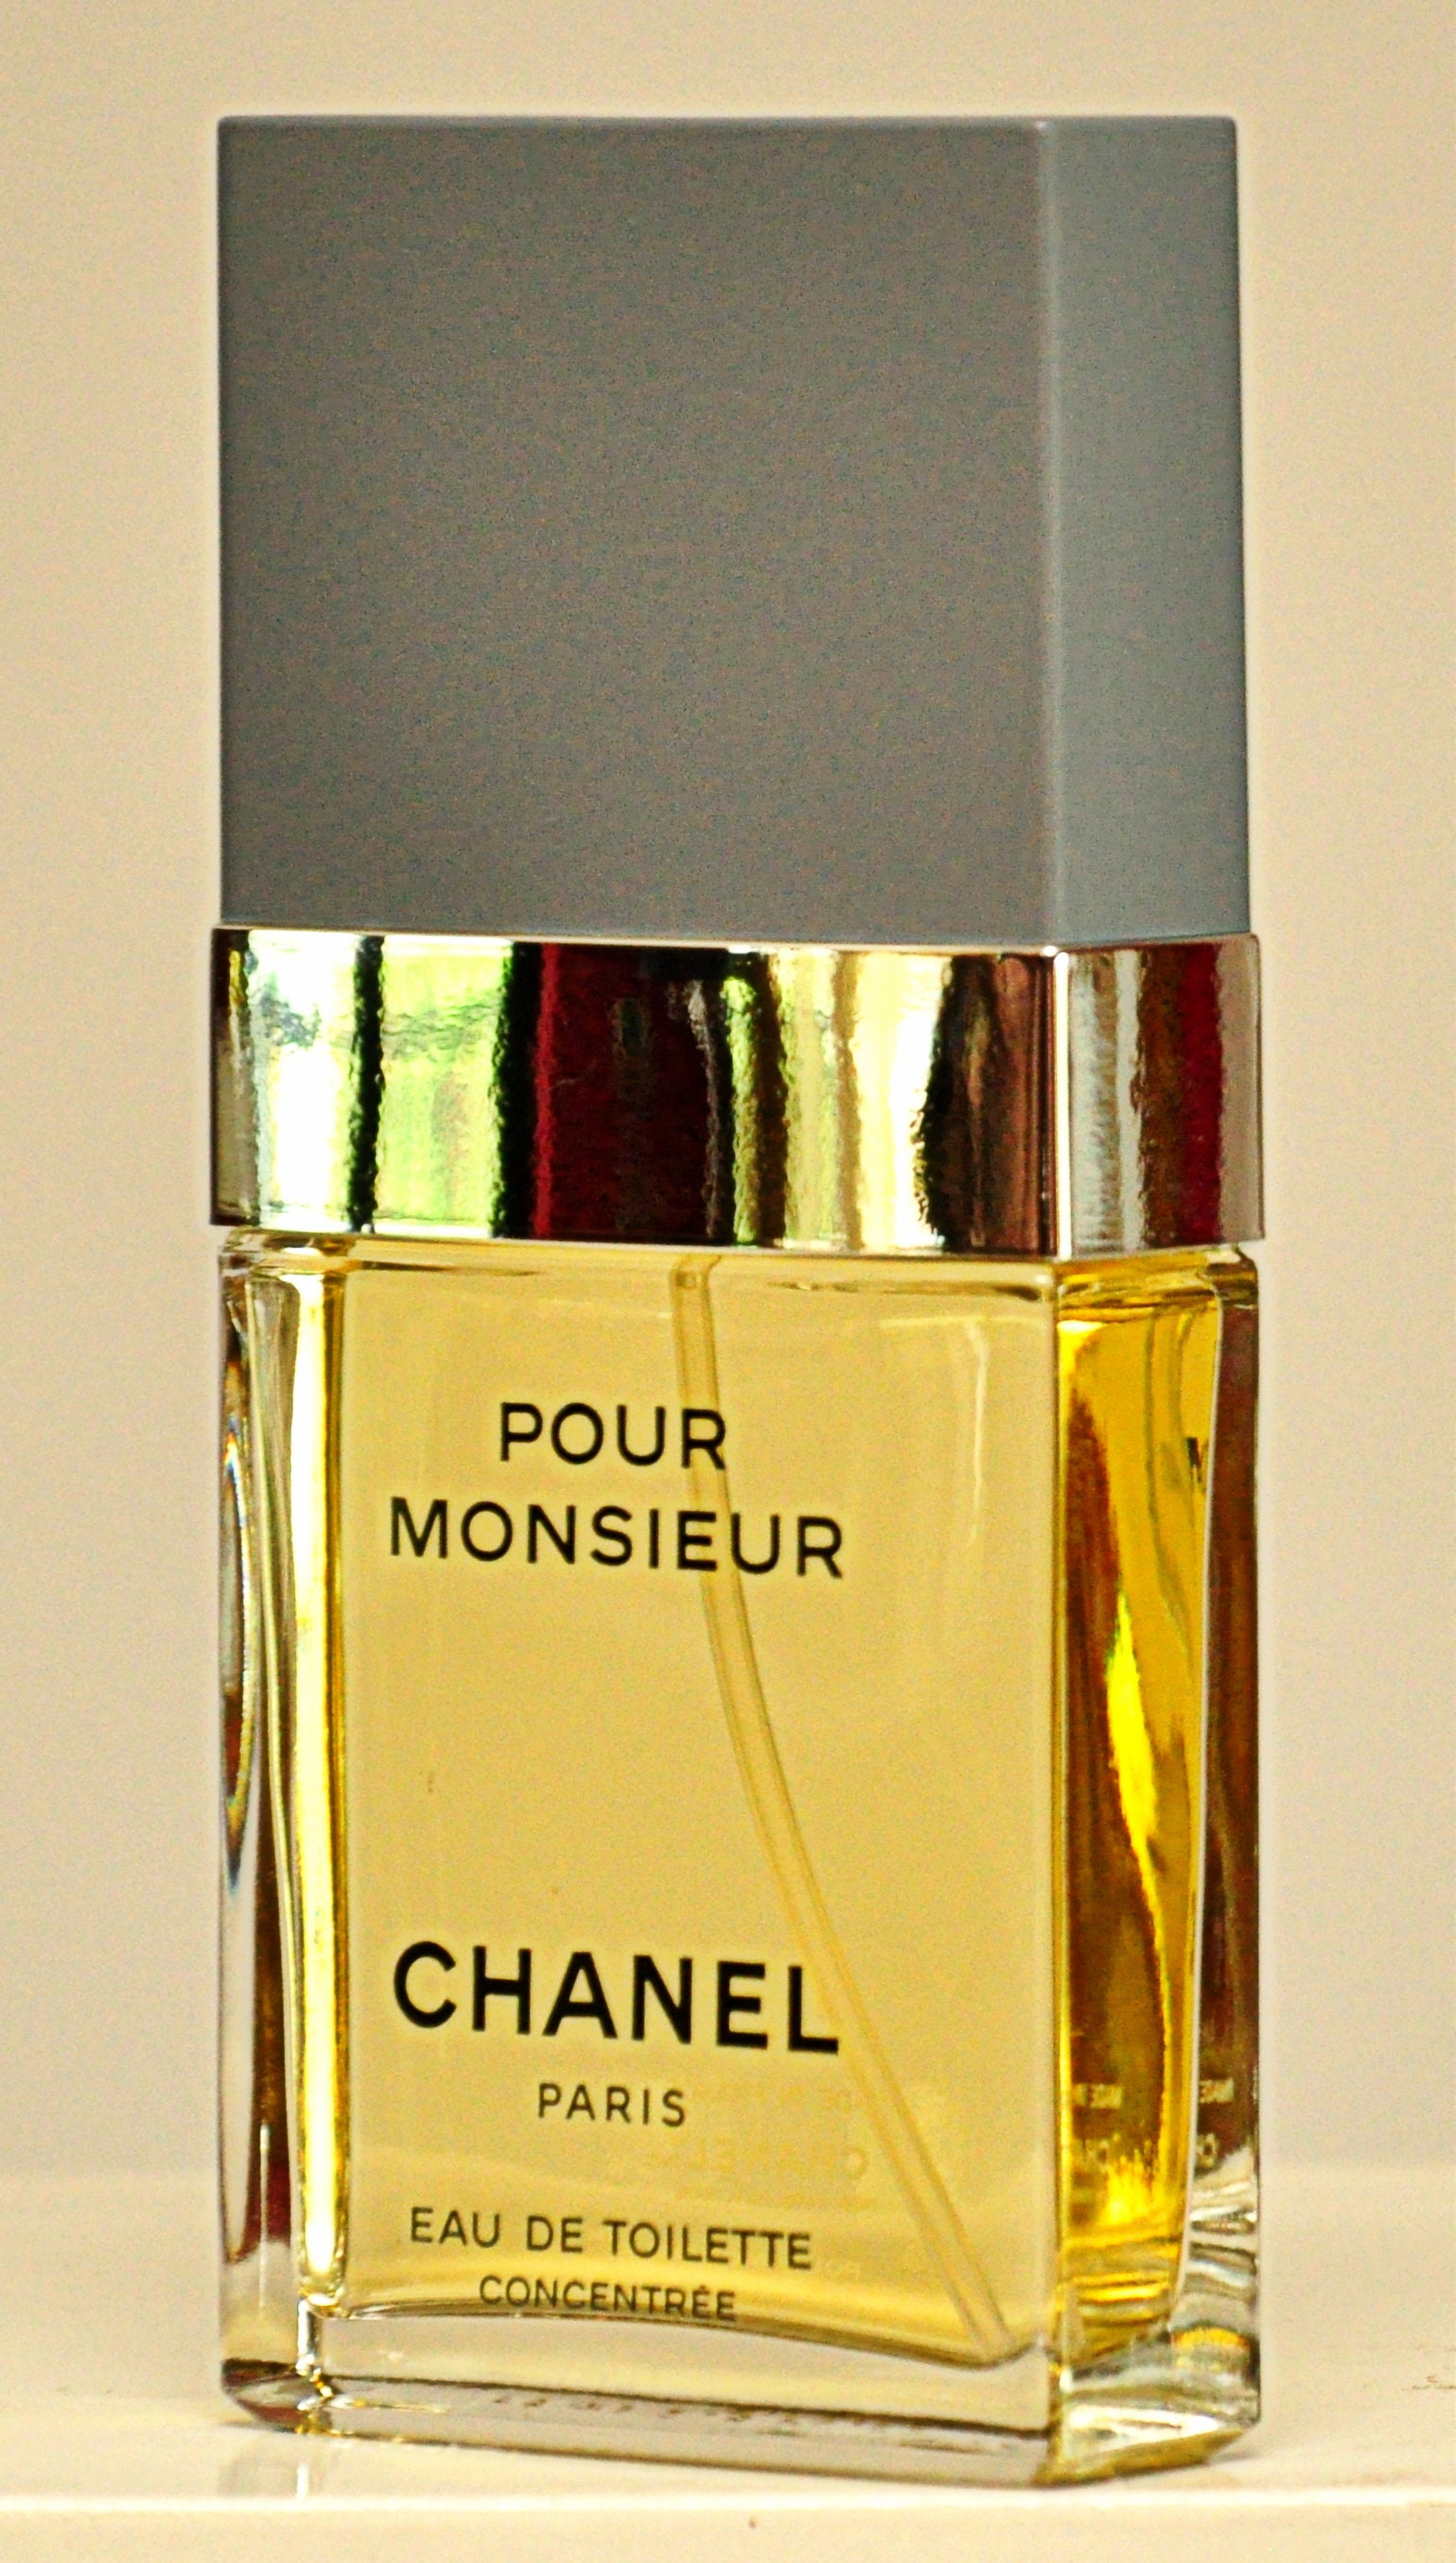 Chanel Pour Monsieur Eau de Toilette Edt 75ml 2.5 Etsy 日本